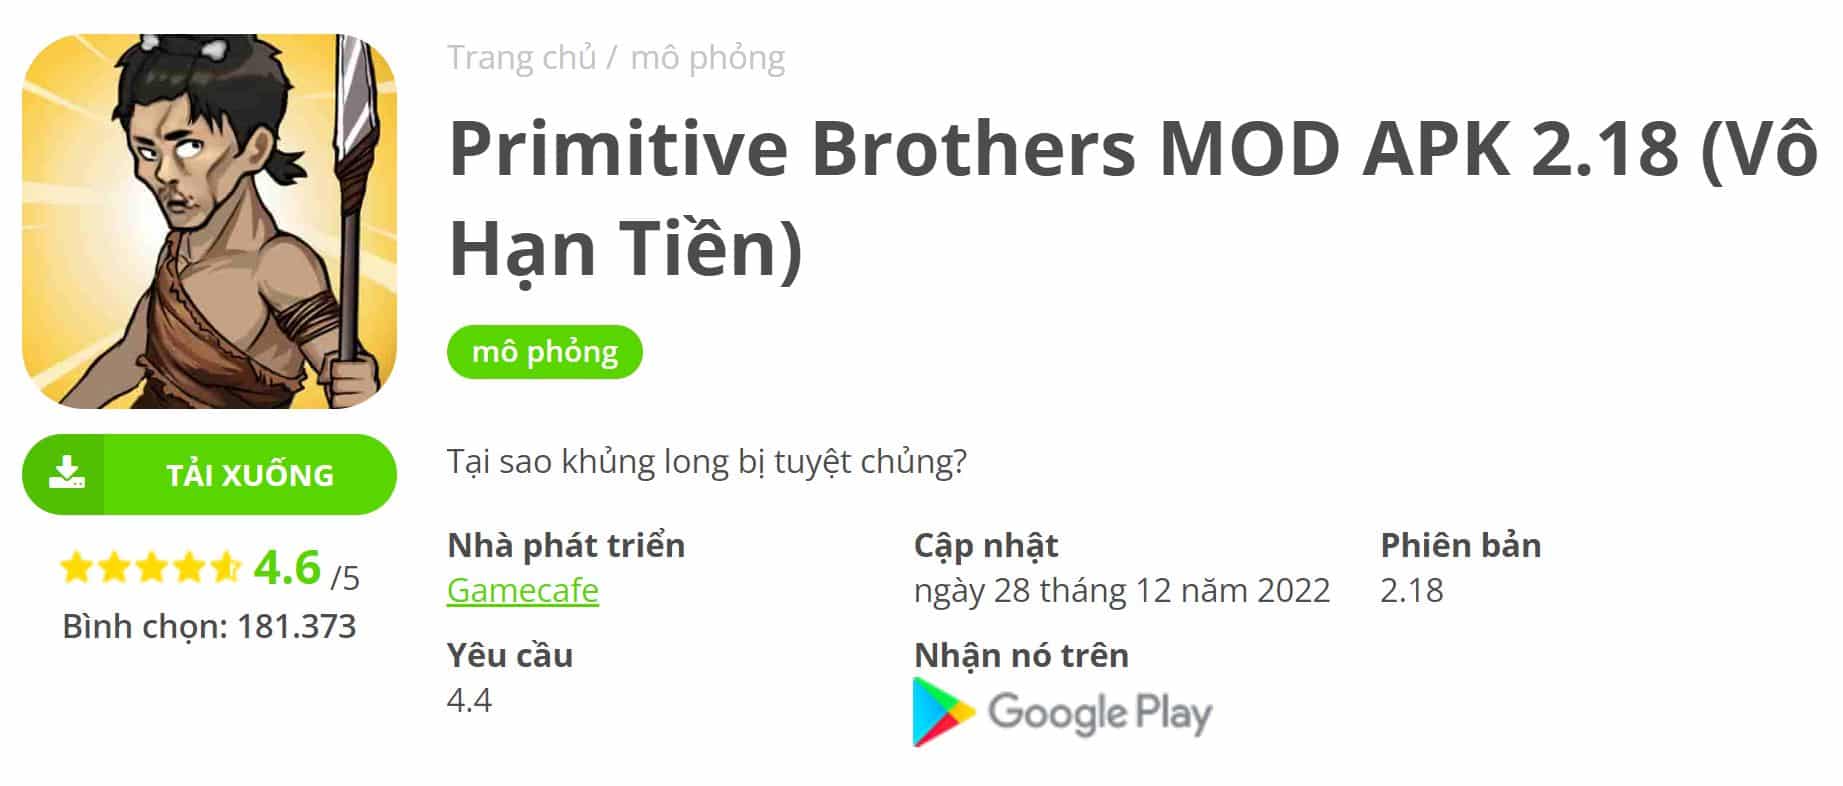 Primitive Brothers MOD APK 2.18